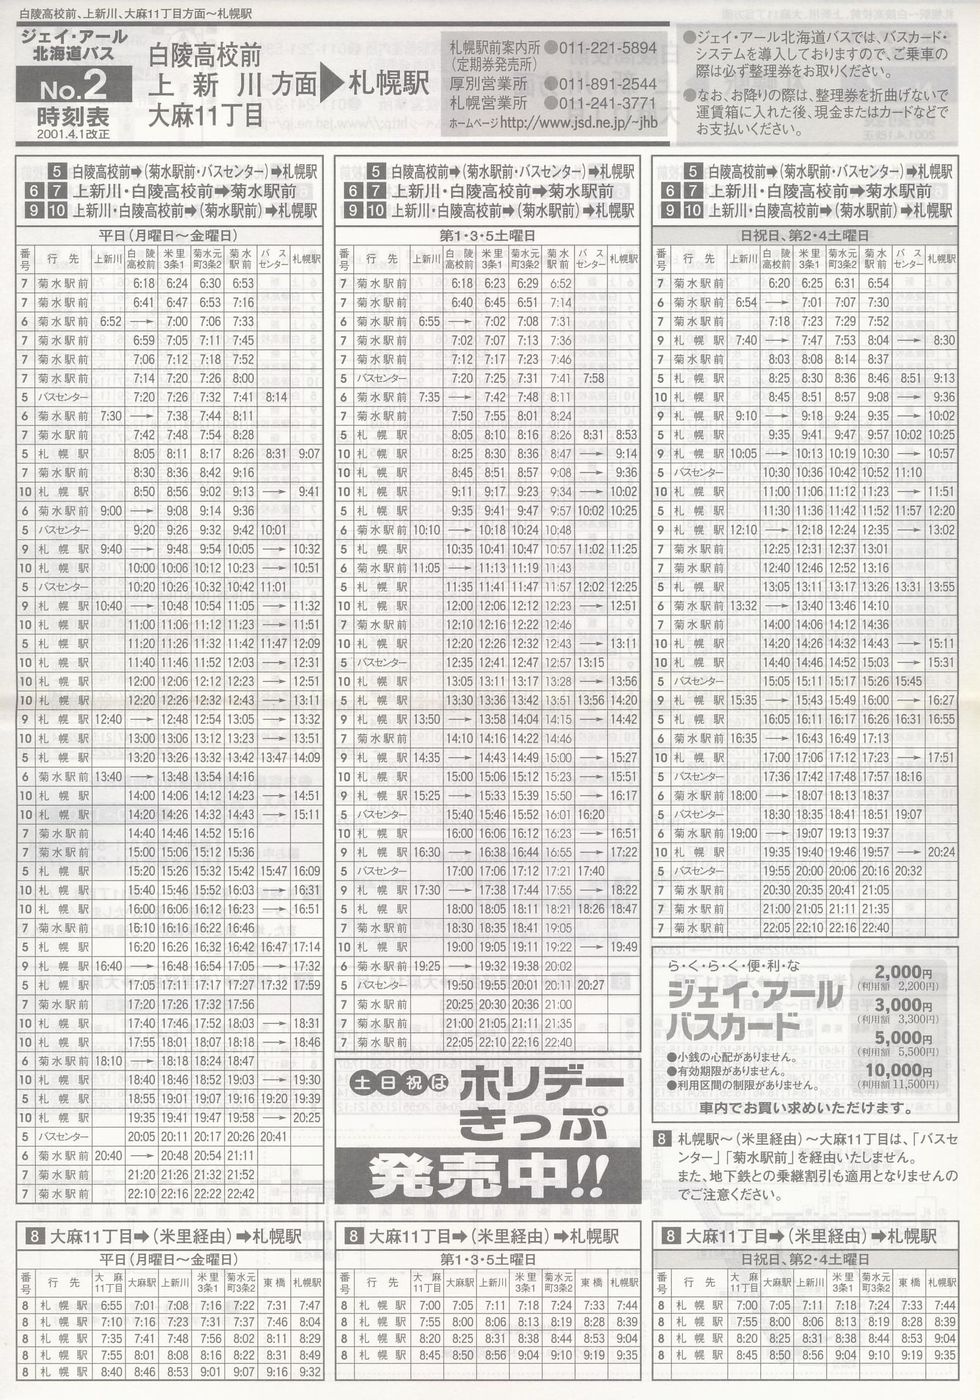 2001-04-01改正_ジェイ・アール北海道バス_空知線時刻表２表面